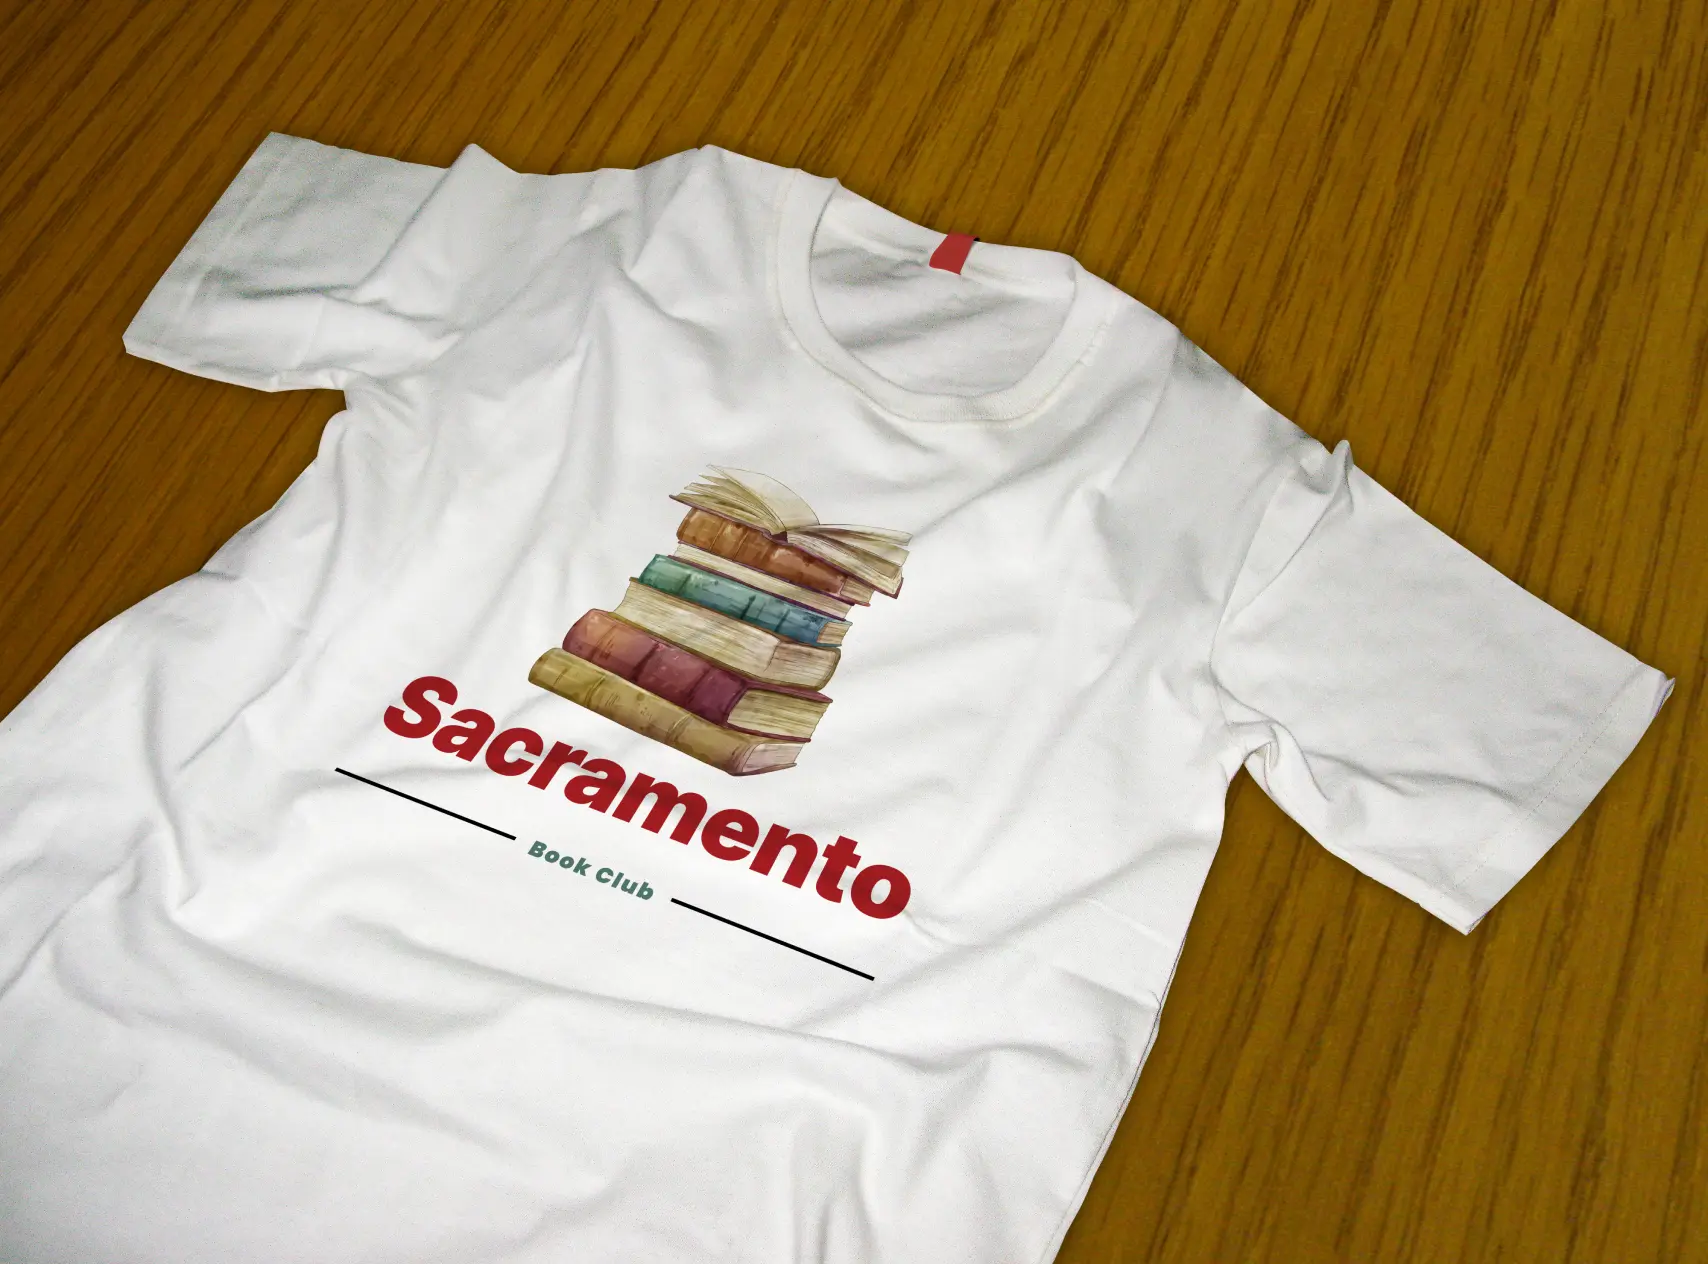 Sacramento tshirt